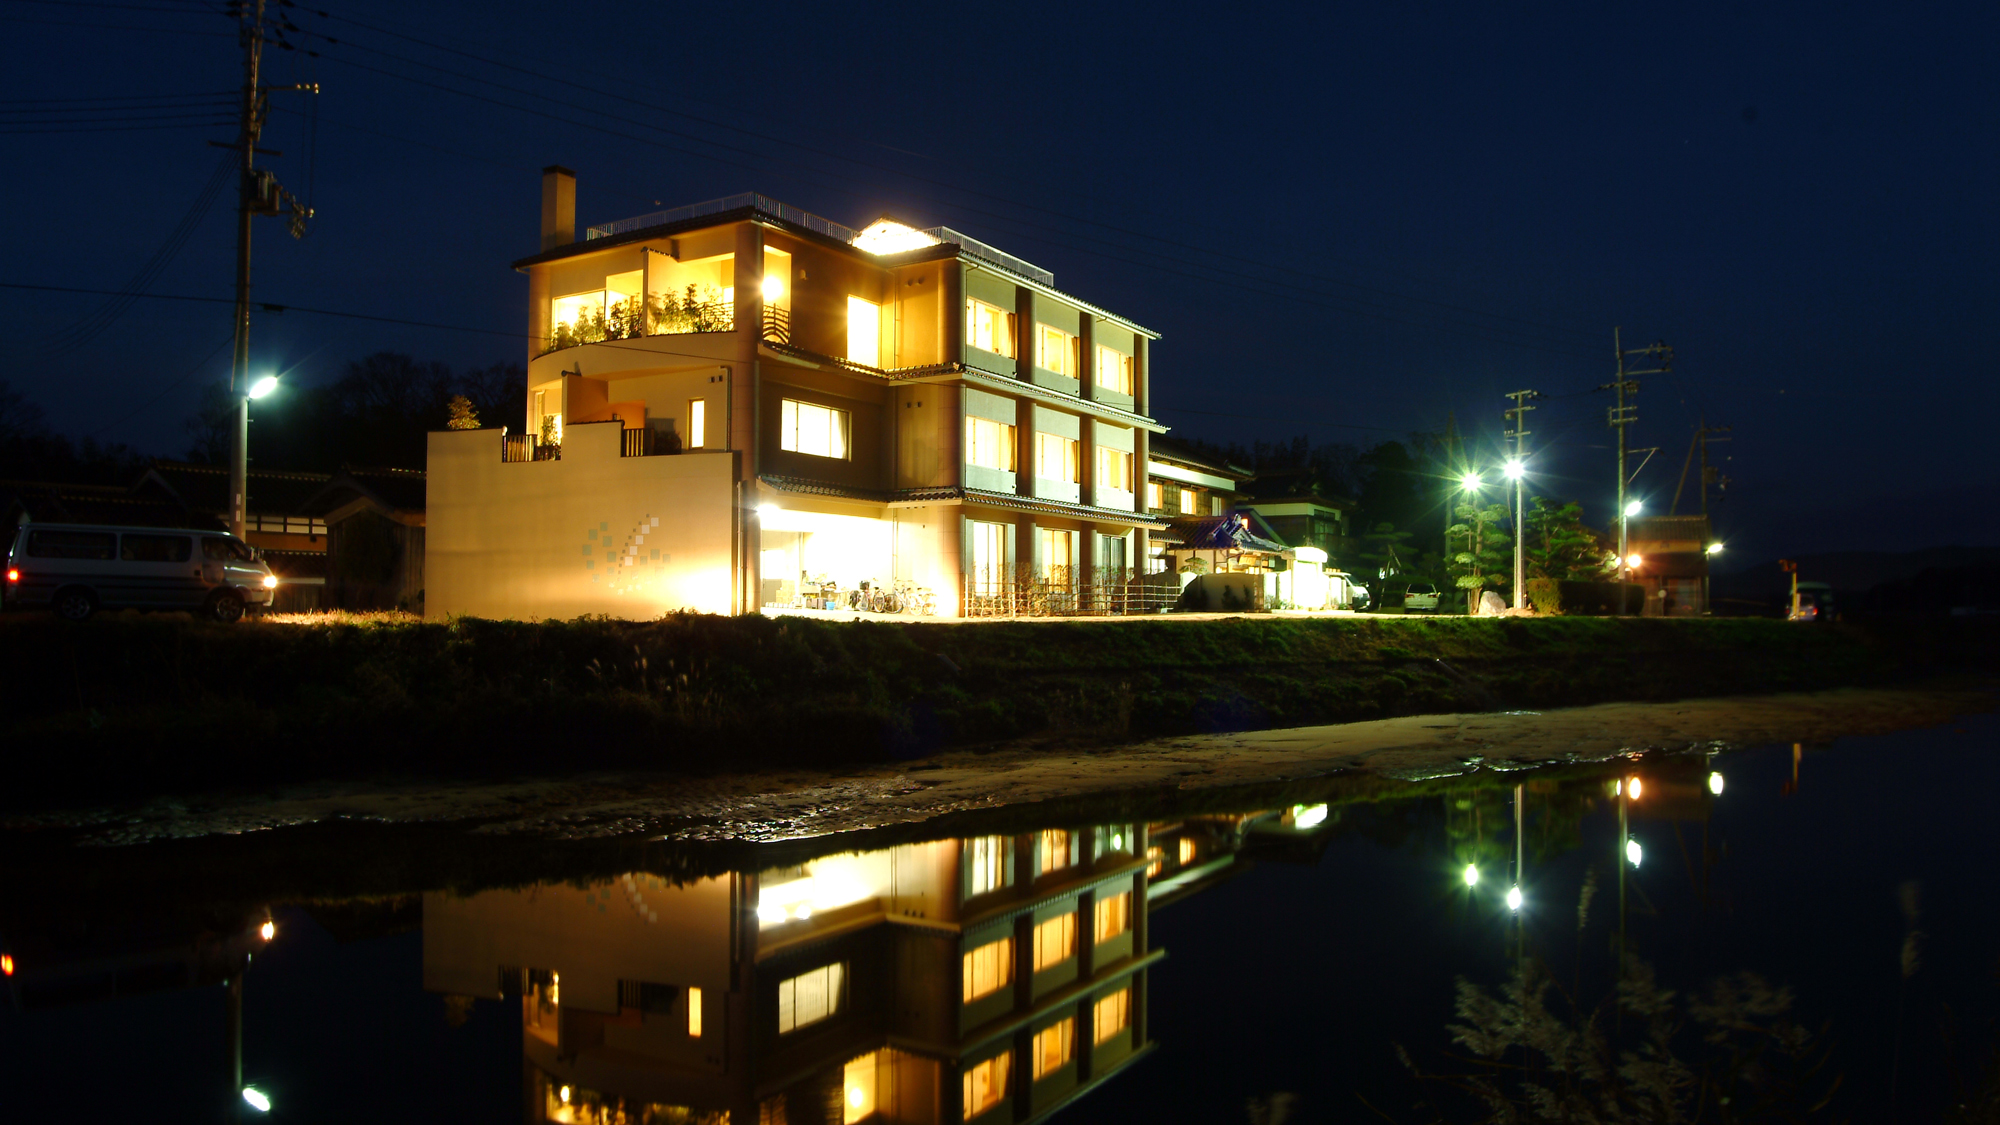 京都でカニ料理 京都 丹後でカニ料理と温泉が堪能できるおすすめの宿 だれどこ